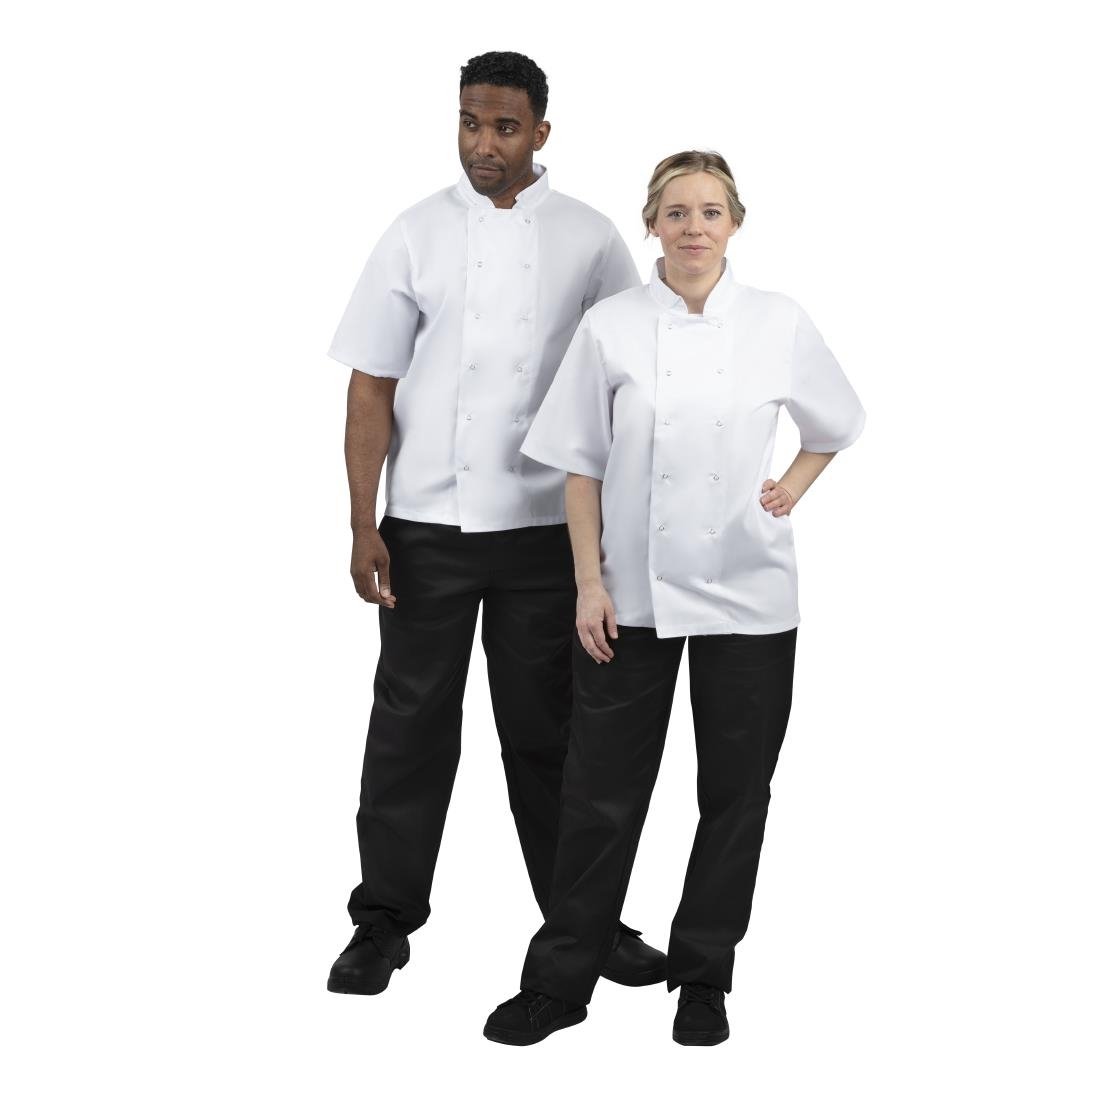 B250-S Whites Boston Unisex Short Sleeve Chefs Jacket White S JD Catering Equipment Solutions Ltd